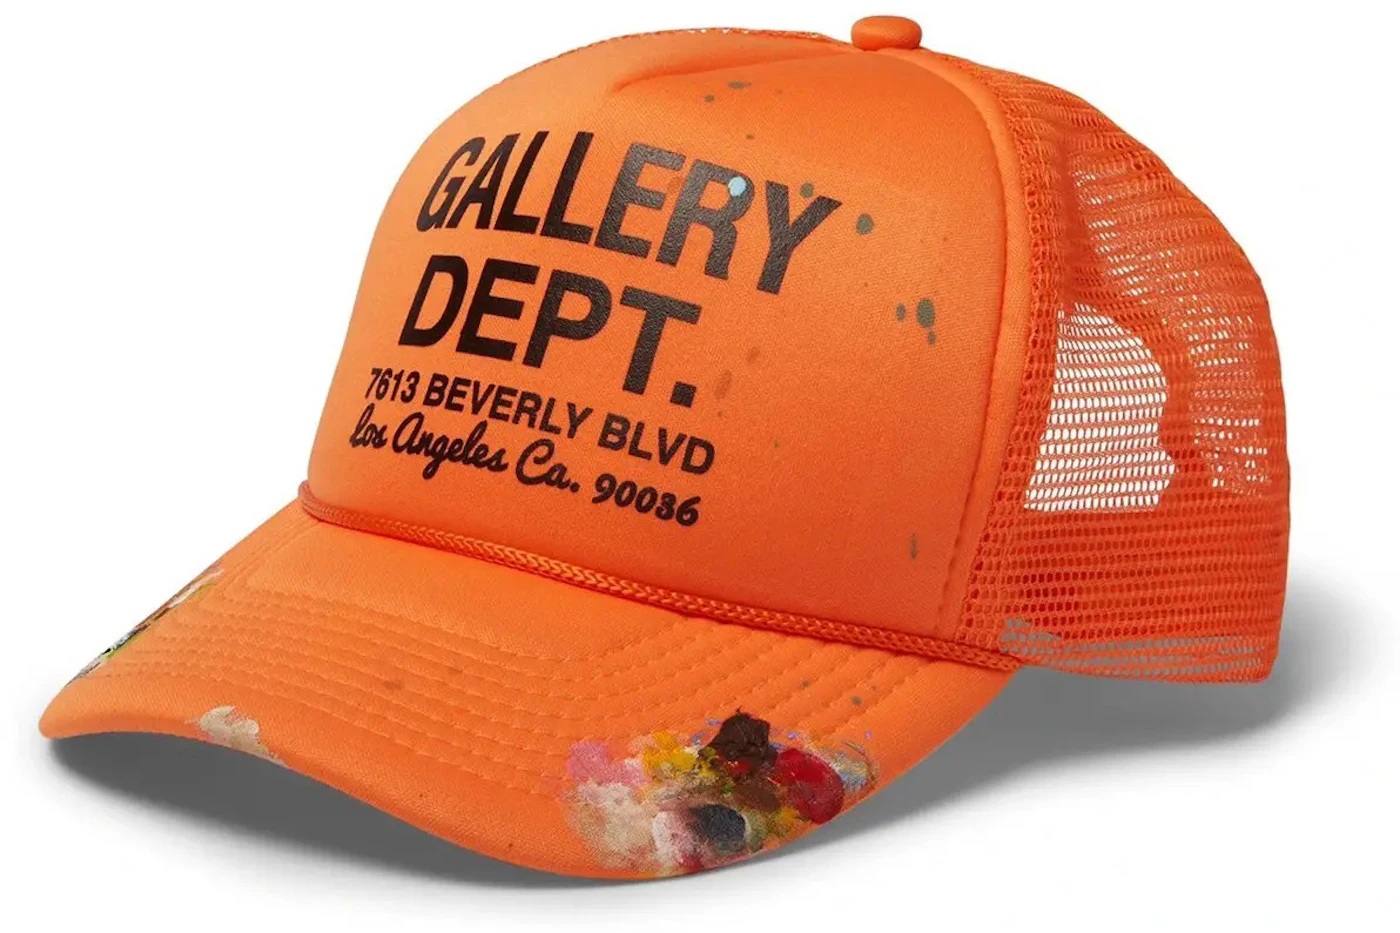 https://images.stockx.com/images/Gallery-Dept-Workshop-Trucker-Hat-Orange.jpg?fit=fill&bg=FFFFFF&w=700&h=500&fm=webp&auto=compress&q=90&dpr=2&trim=color&updated_at=1629256106